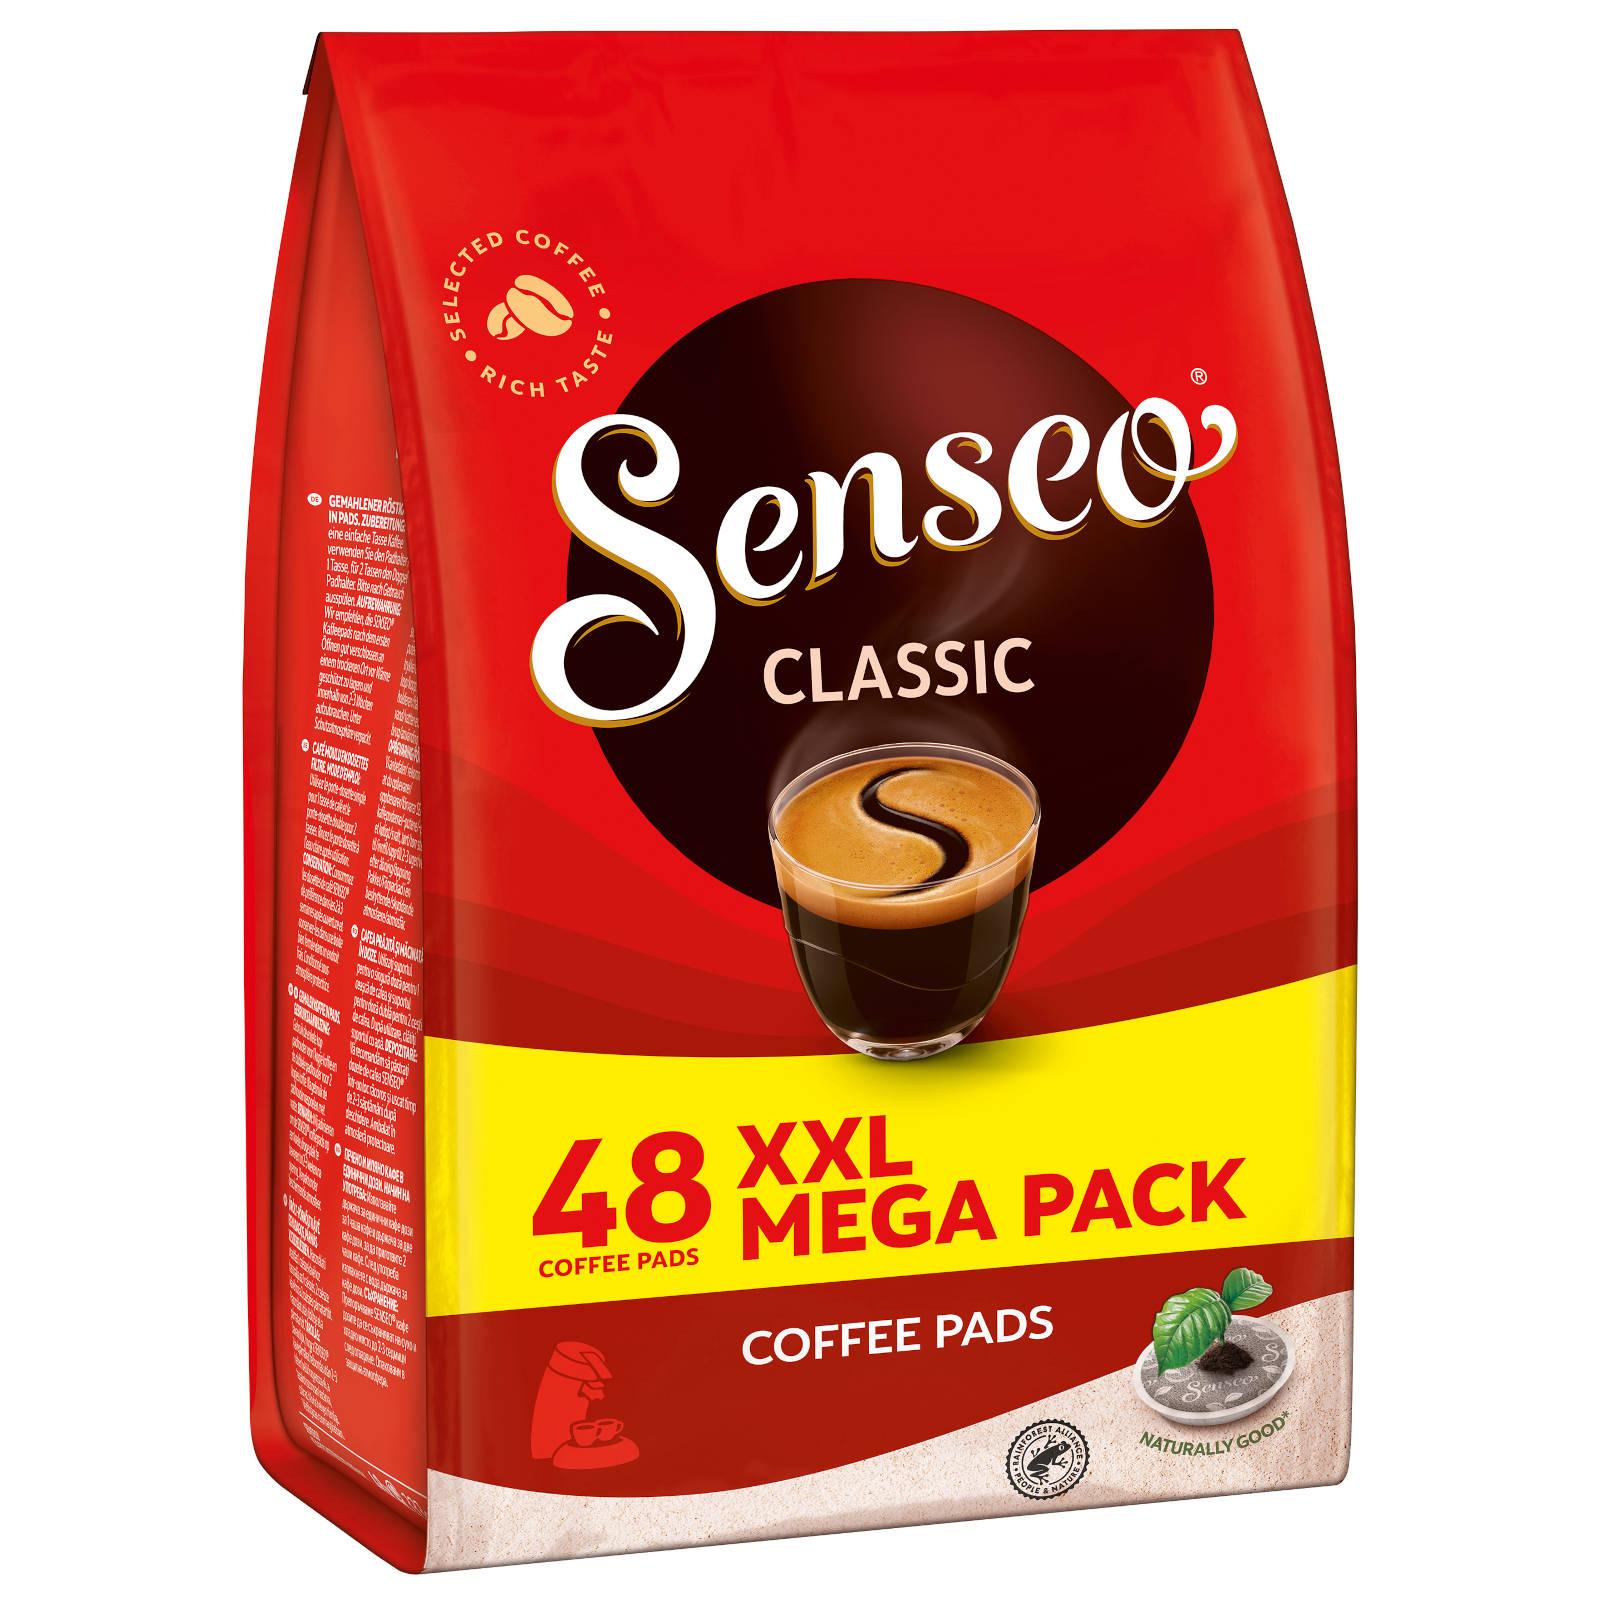 SENSEO Classic Getränke Kaffeepads Pad-Maschine) XXL (Senseo Pack 5 48 x